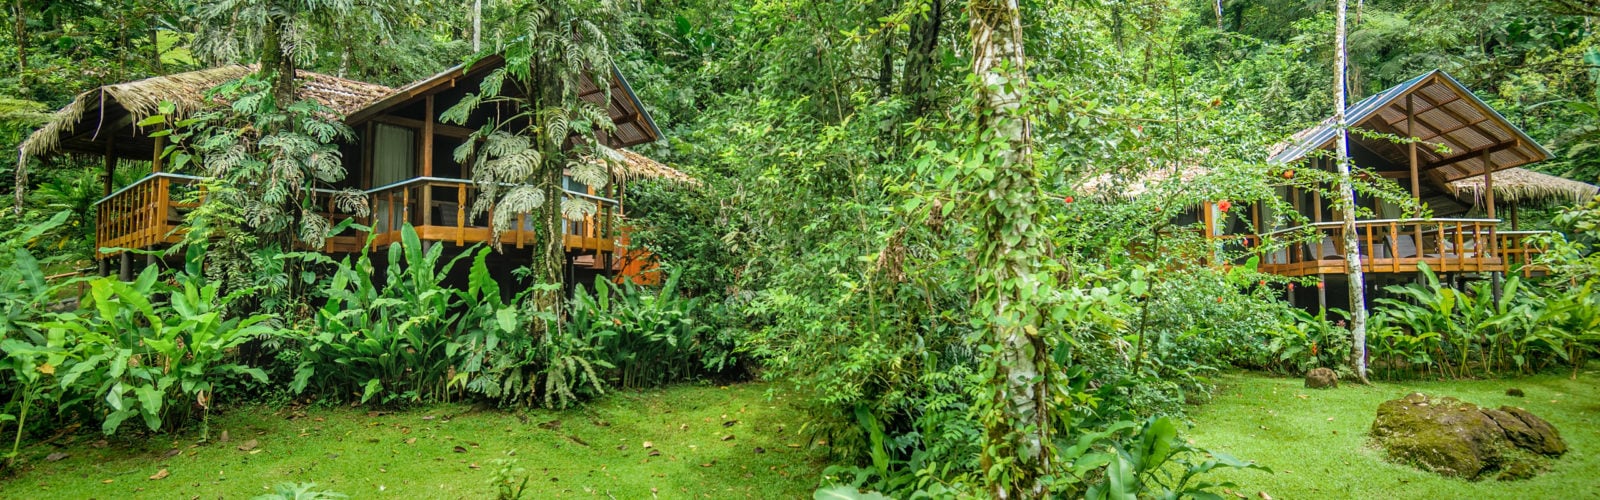 Pacuare Lodge, Costa Rica.